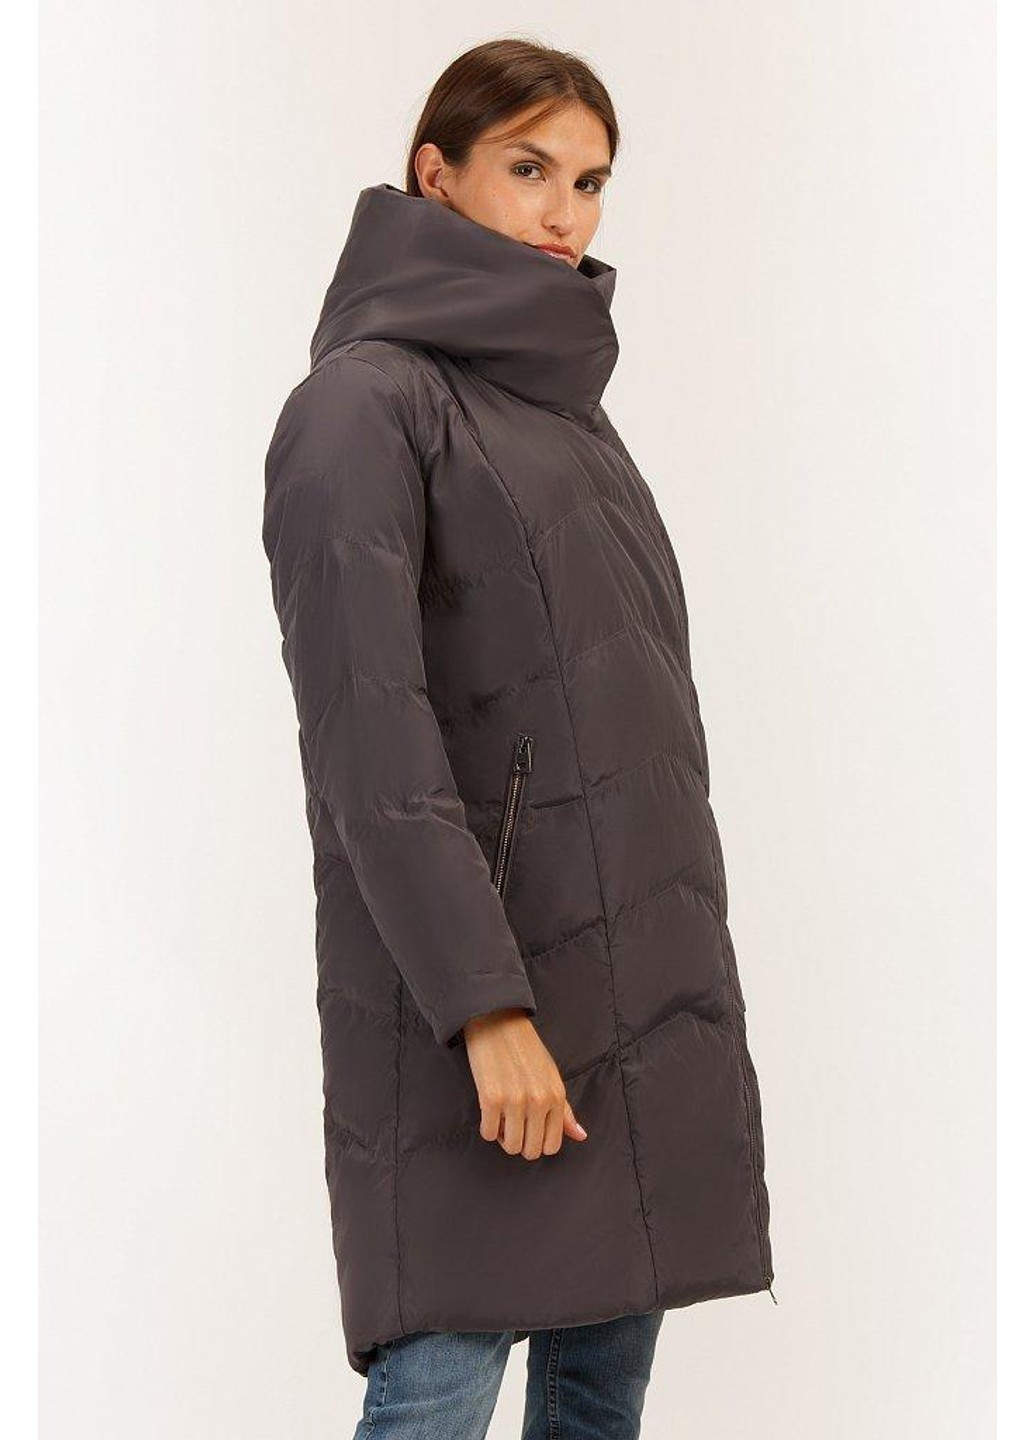 Темно-серая зимняя зимняя куртка a19-11010-202 Finn Flare